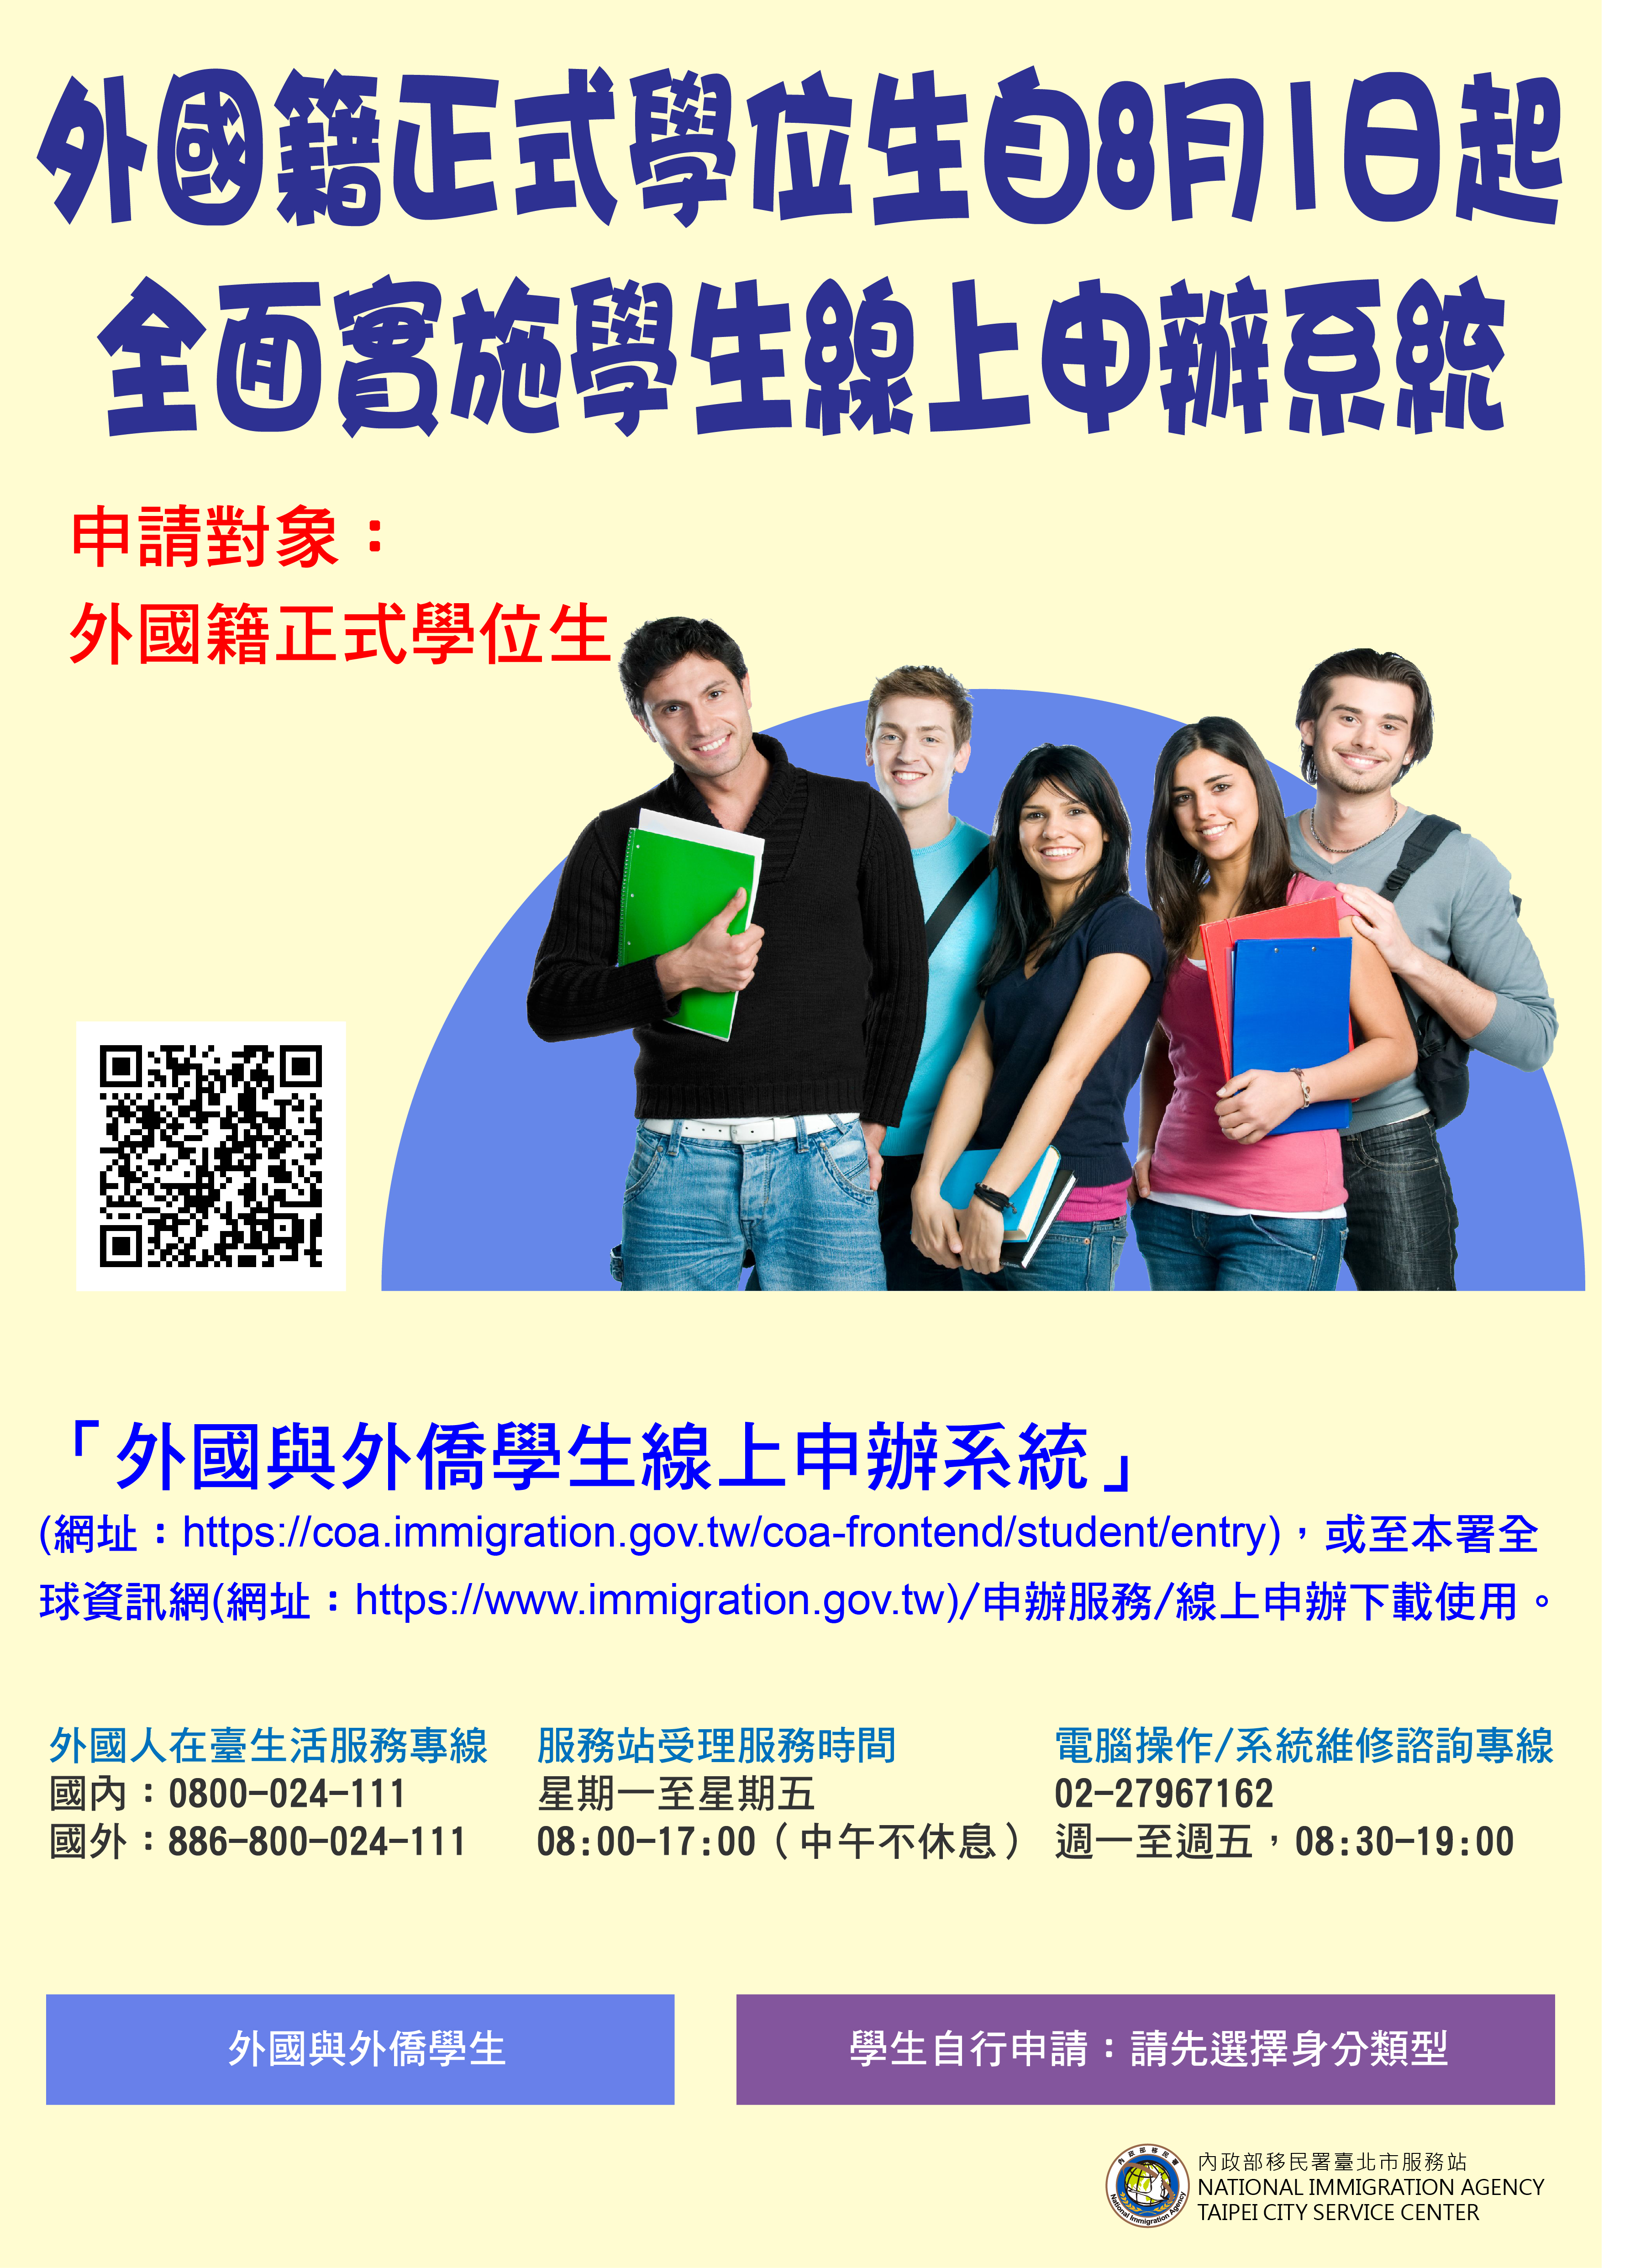 輔導科修改版-外來學生線上申請海報a1-中文-1